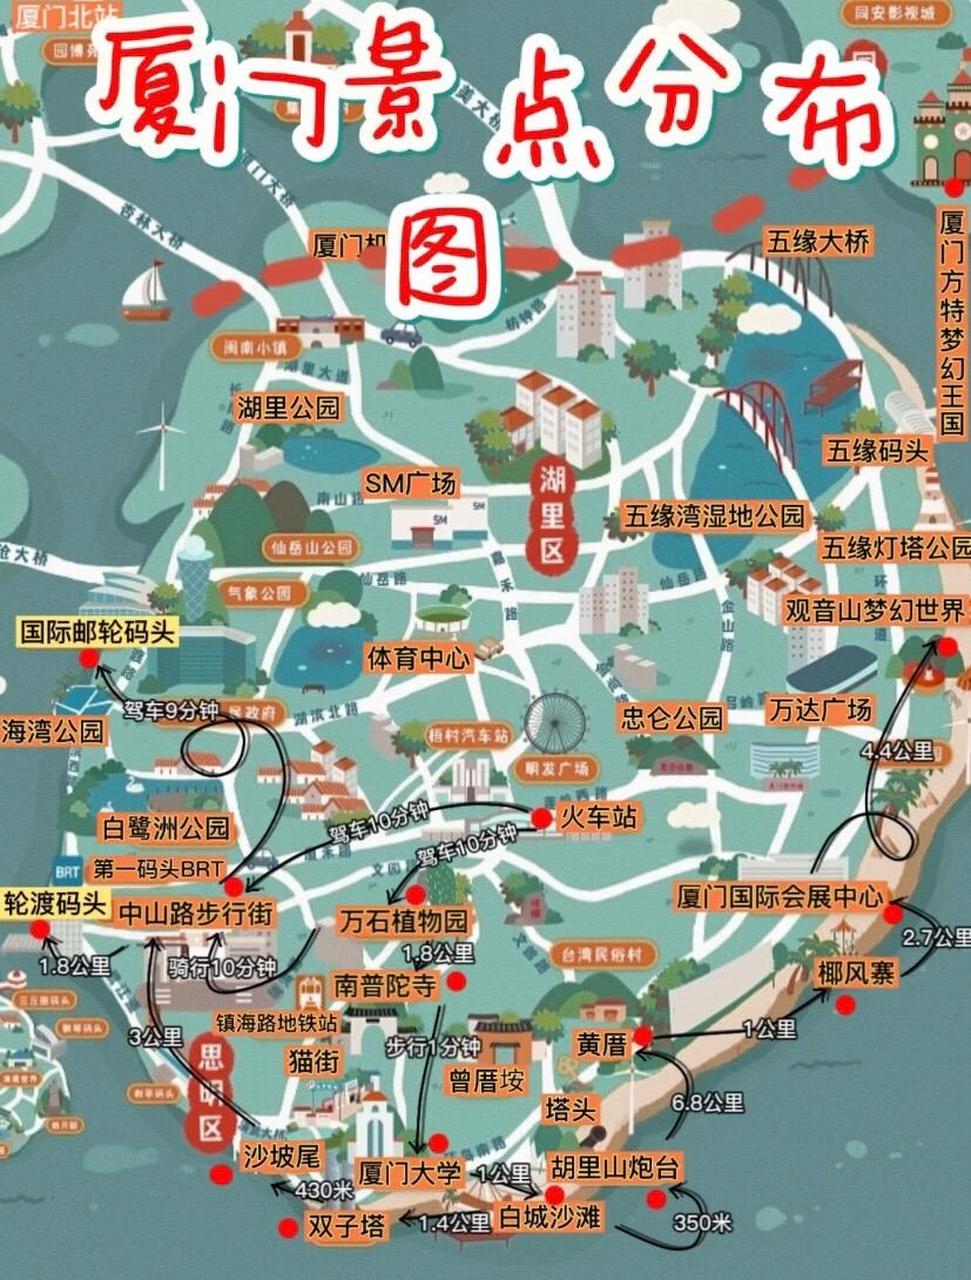 厦门旅游景点地图高清图片